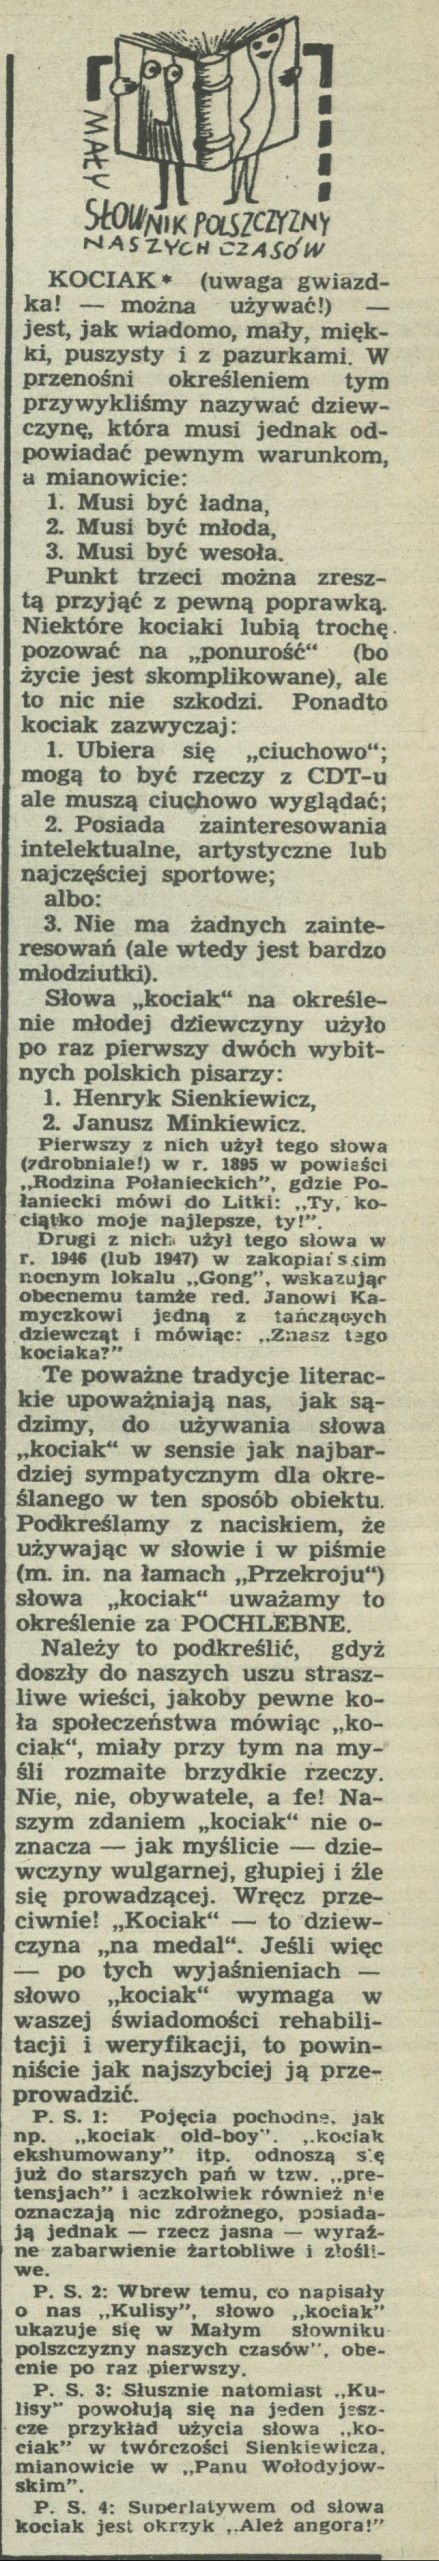 Mały słownik polszczyzny naszych czasów